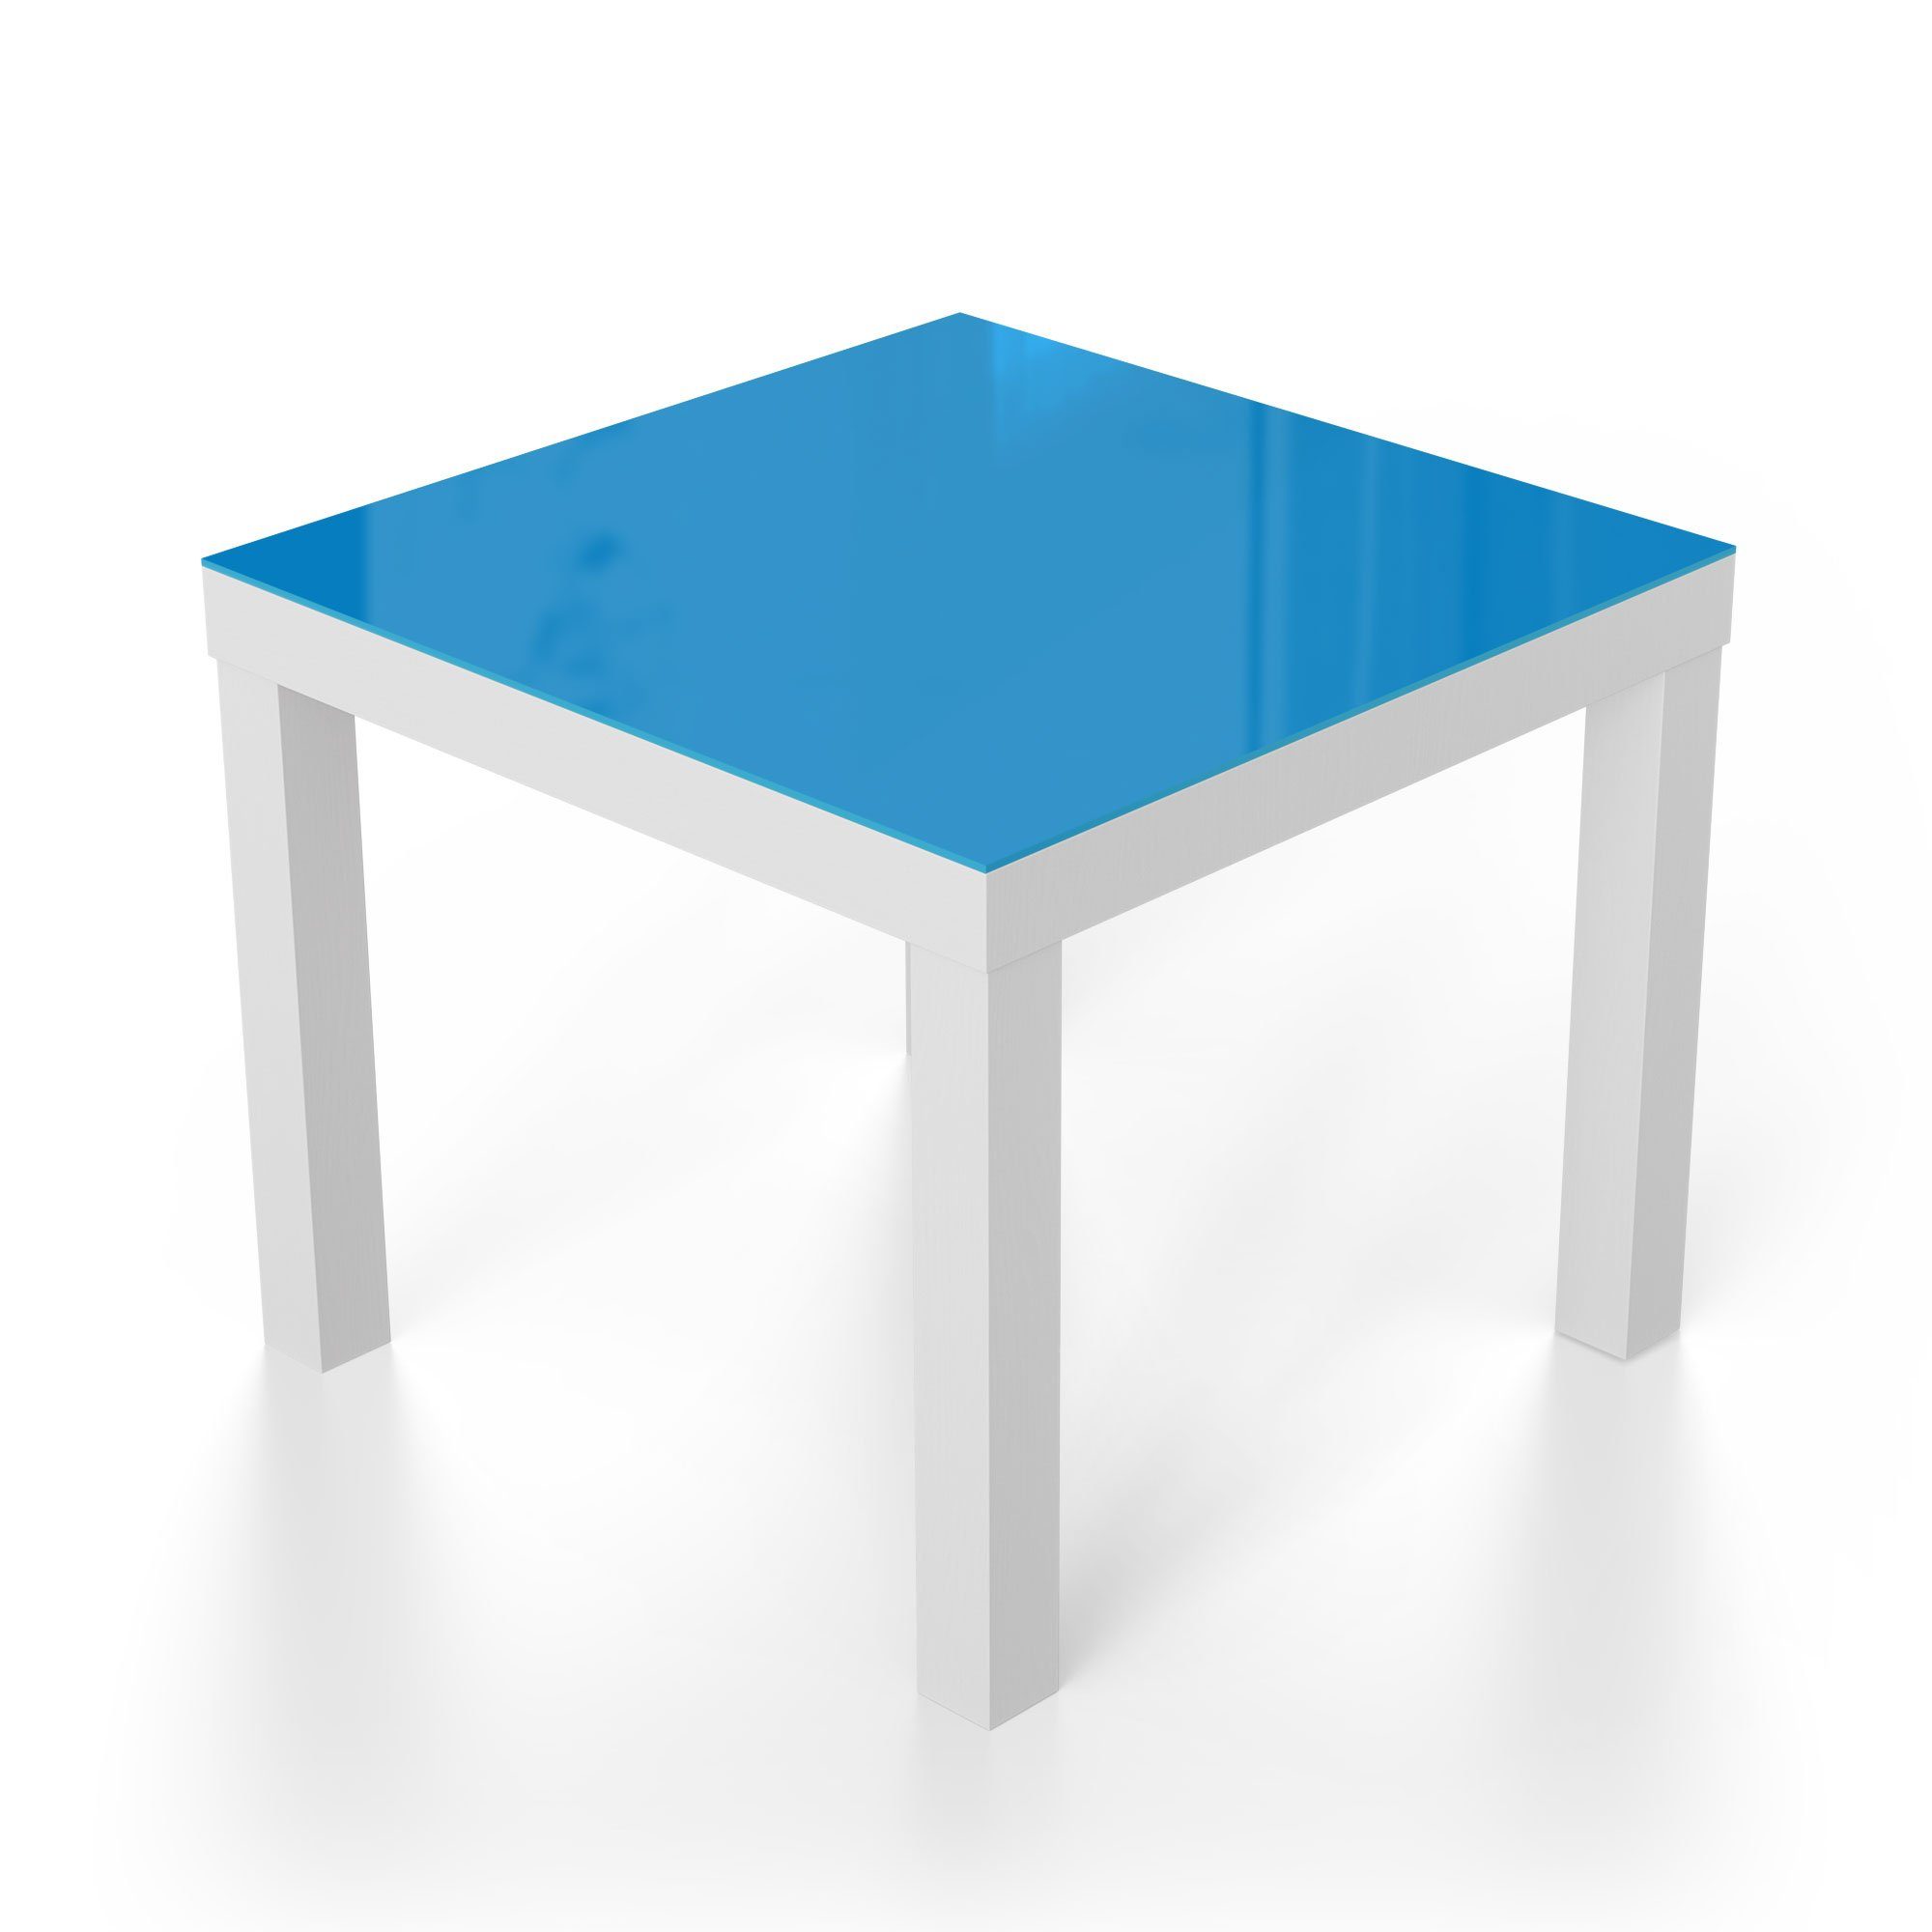 Weiß DEQORI modern Couchtisch Glastisch Hellblau', 'Unifarben Glas - Beistelltisch